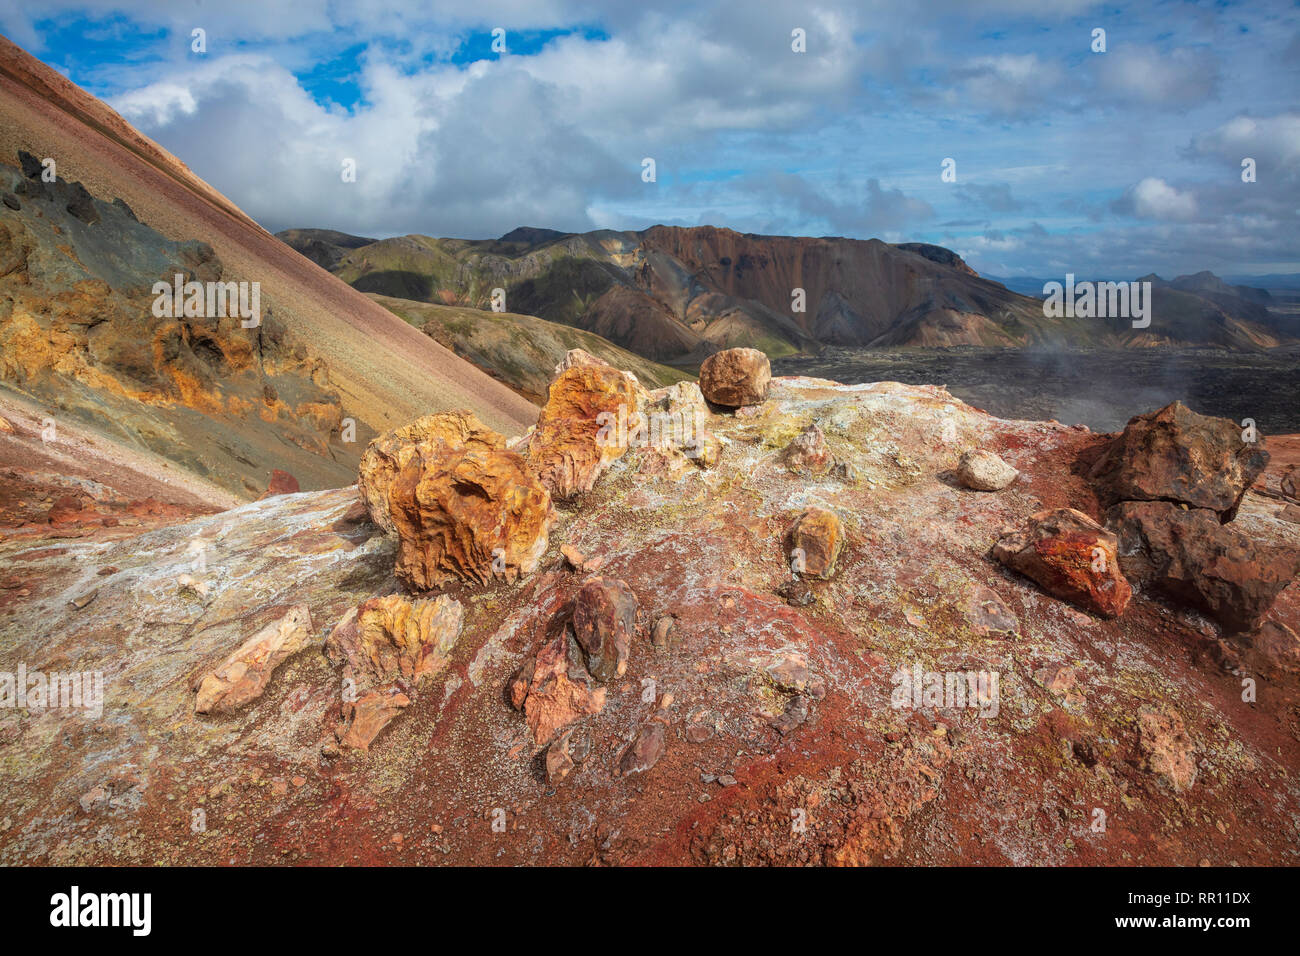 Vulkanische mineralische Ablagerungen entlang der Laugavegur Trail in der Nähe von Landmannalaugar. Zentrale Hochland, Sudhurland, Island. Stockfoto